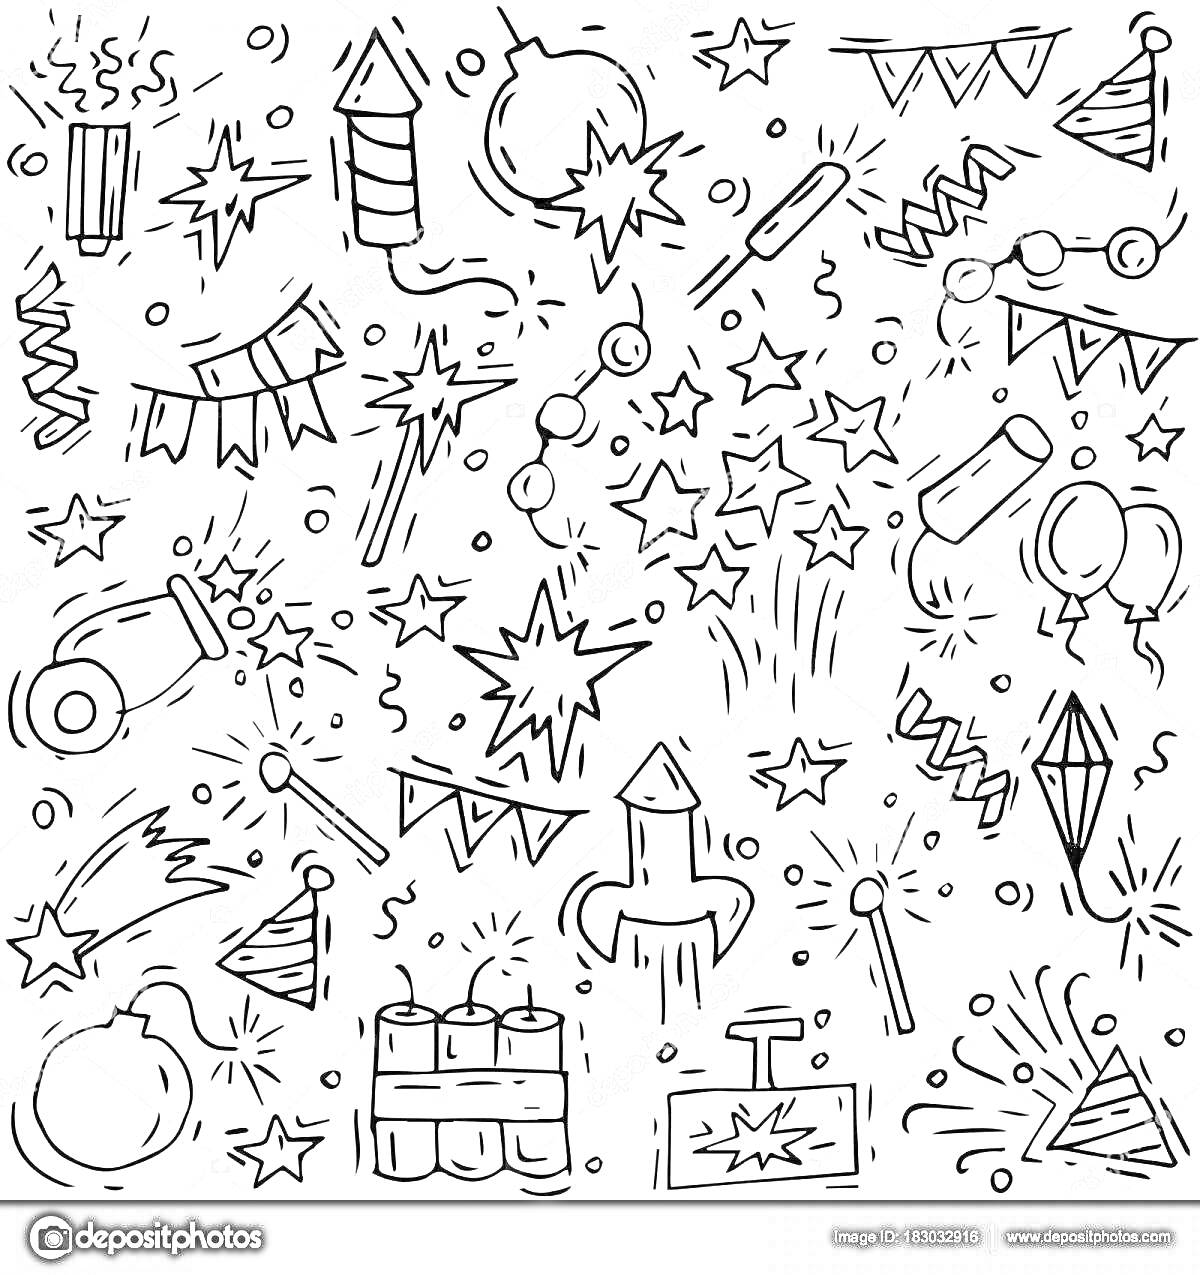 Разнообразные элементы праздника с петардами: хлопушки, ракеты, гирлянды, фейерверки, воздушные шары, праздничные колпаки, праздничные флажки, конфетти, взрывы.